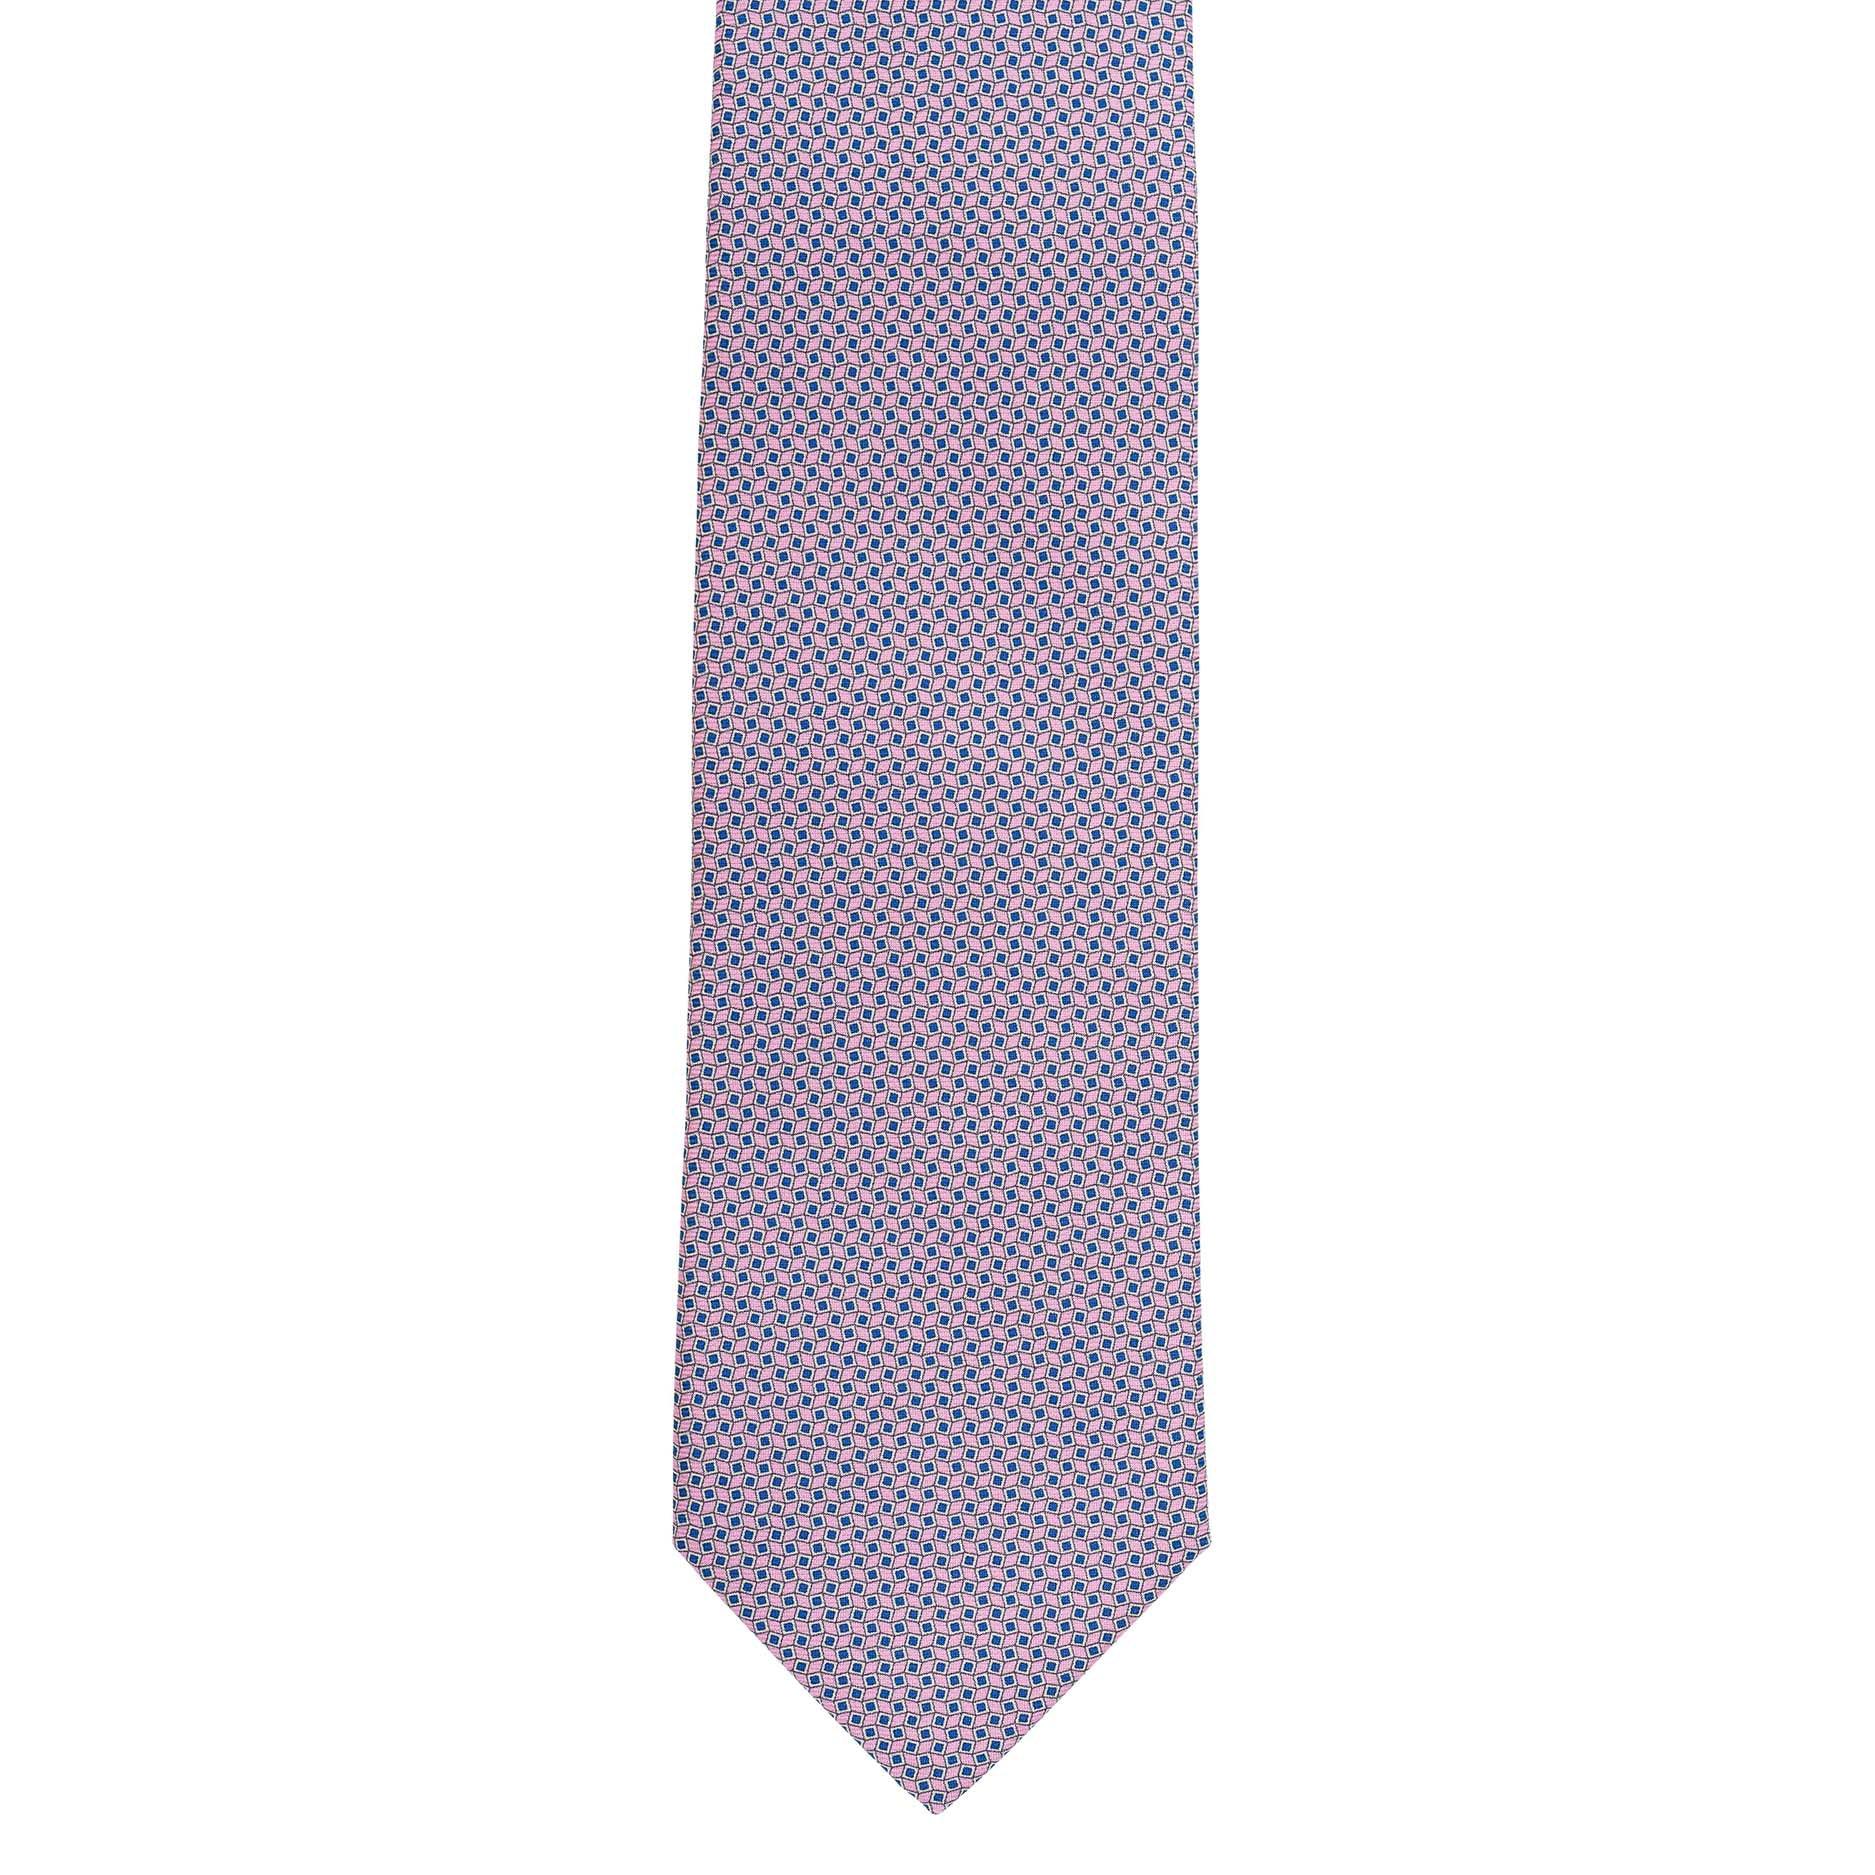 Cravatta 3 pieghe - TAL T2 - Talarico Cravatte